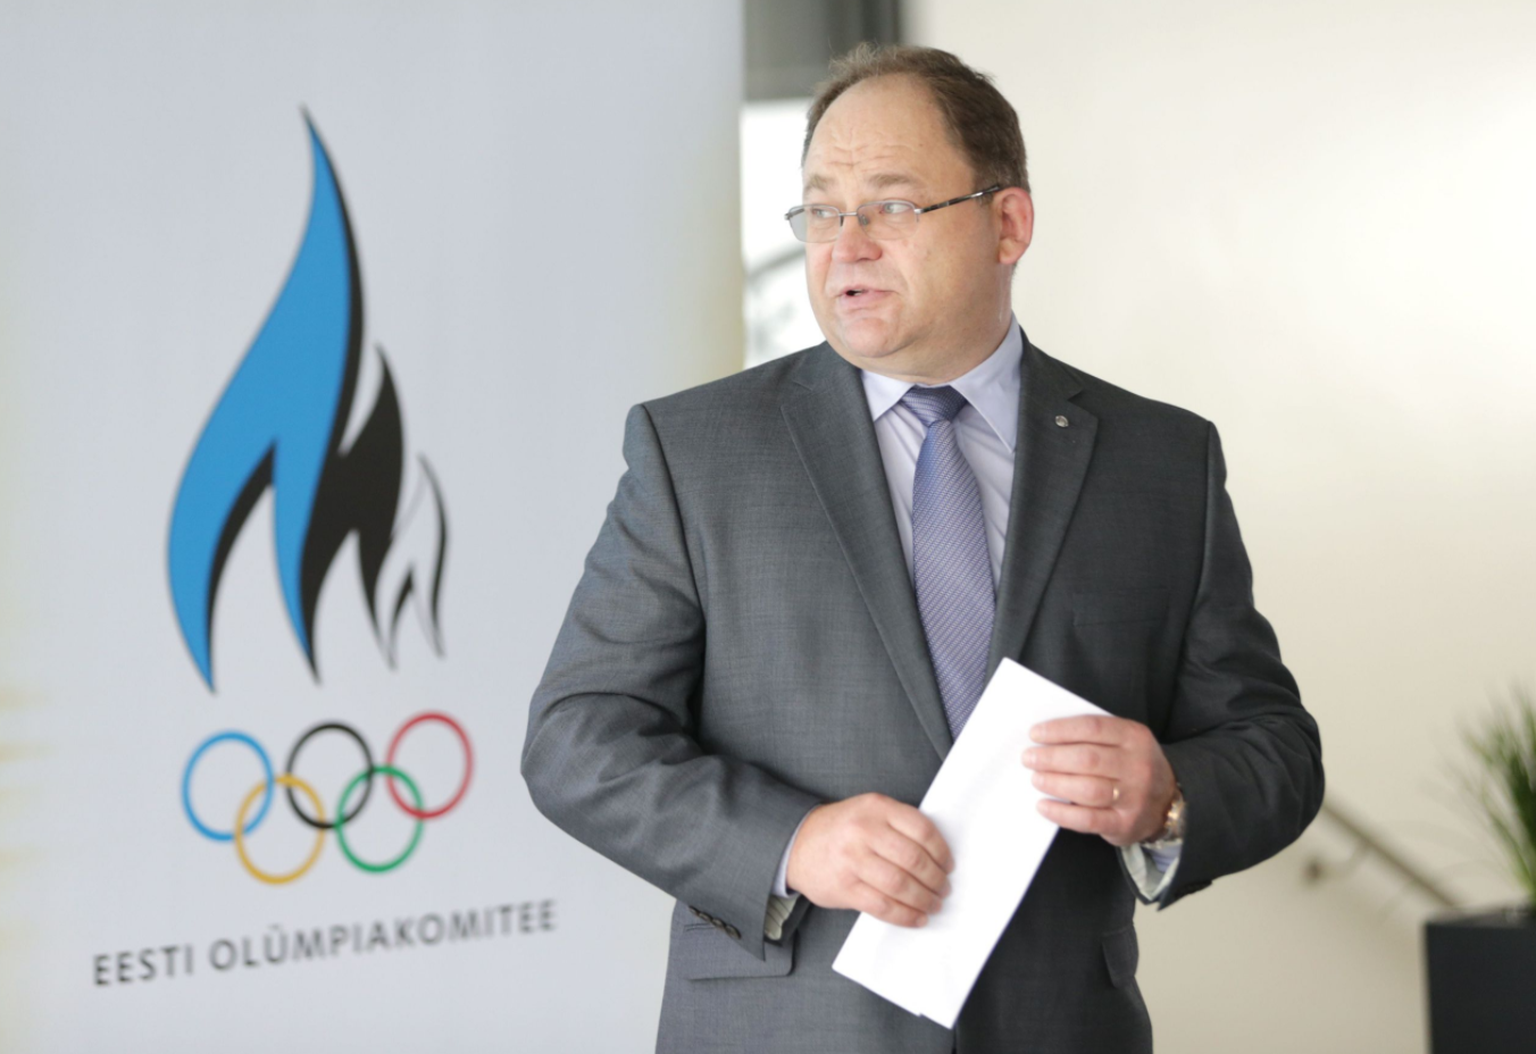 Eesti olümpiakomitee kunagise presidendi Neinar Seli au­kodanikuks nimetamise esmase ettepaneku tegi Tartu spordiliit.